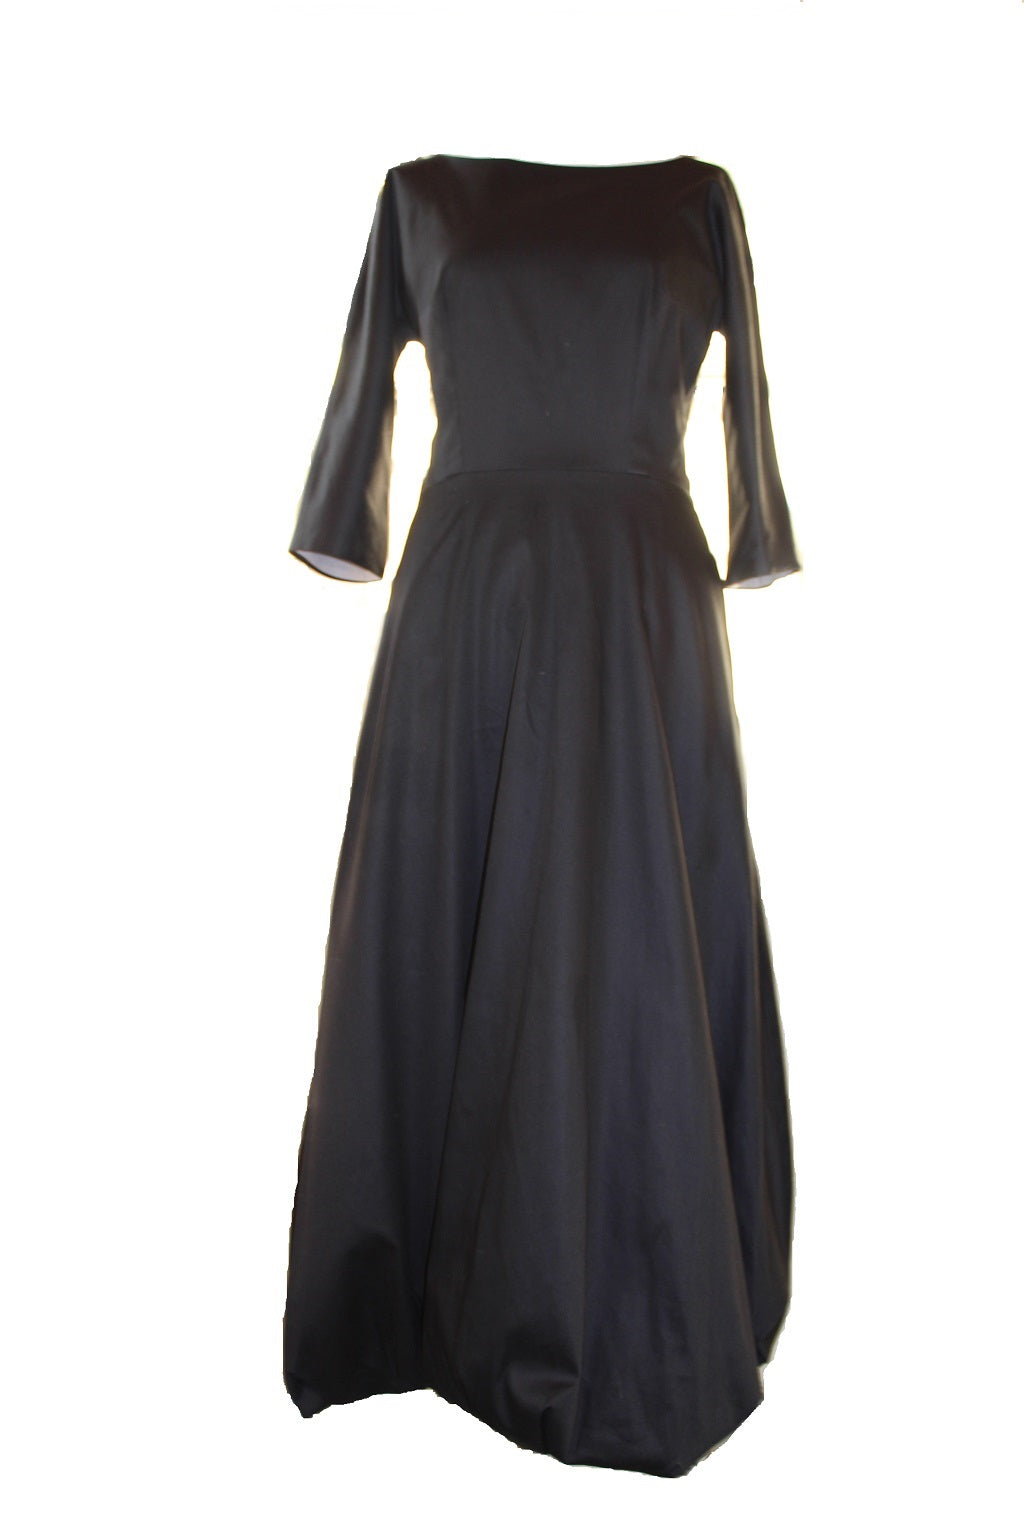 Jolie - cotton long dress with bubble hem